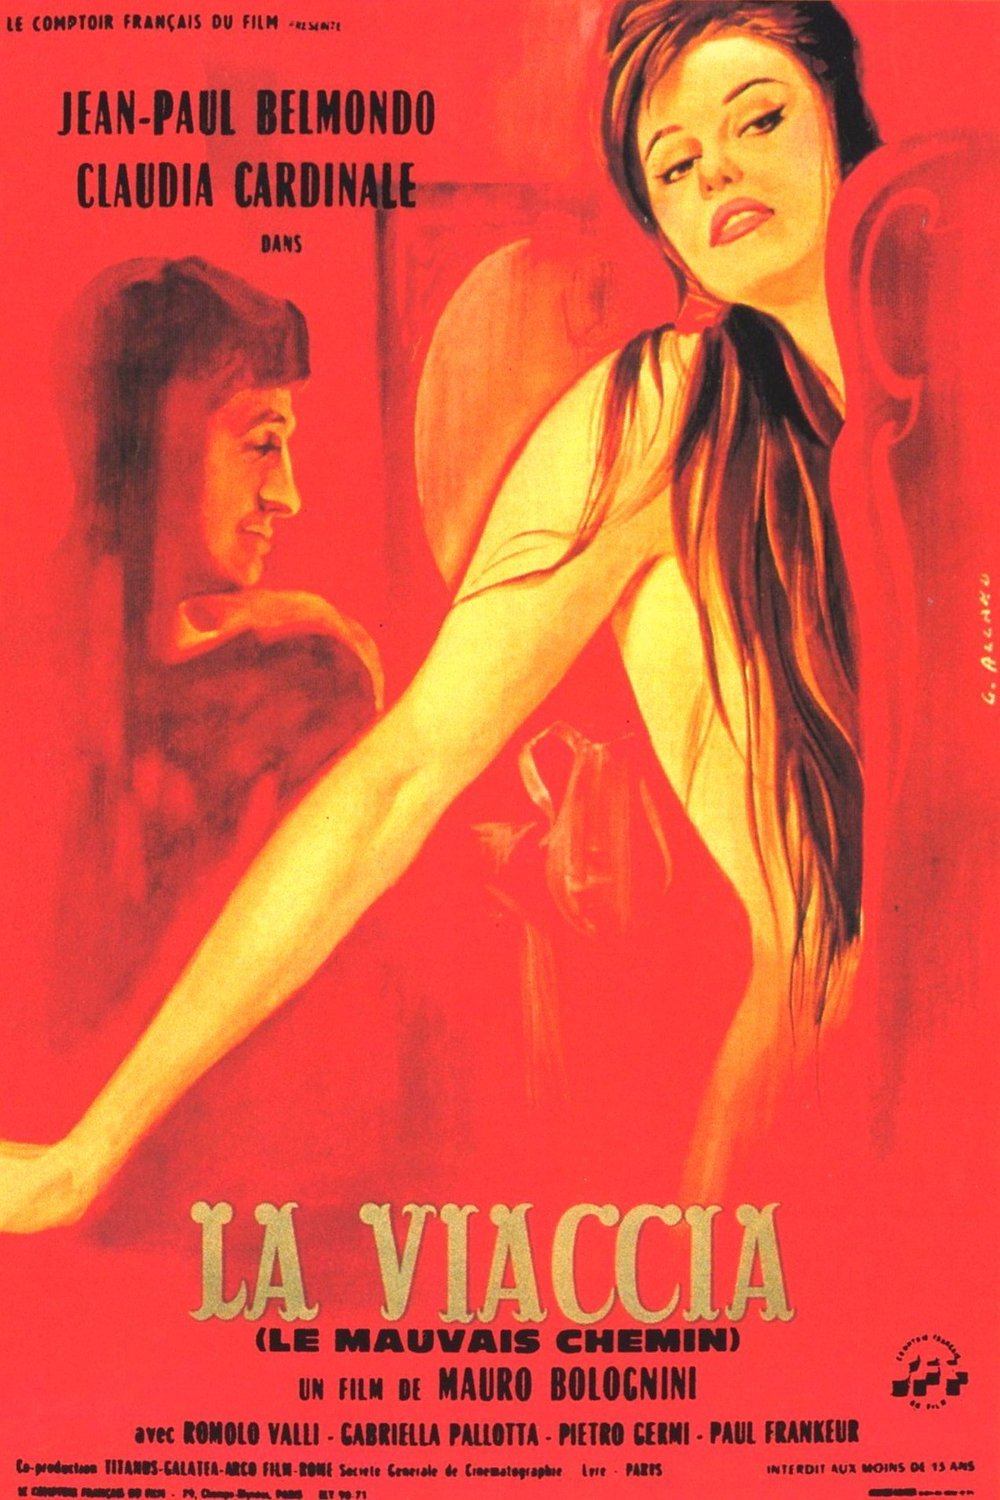 Italian poster of the movie La viaccia